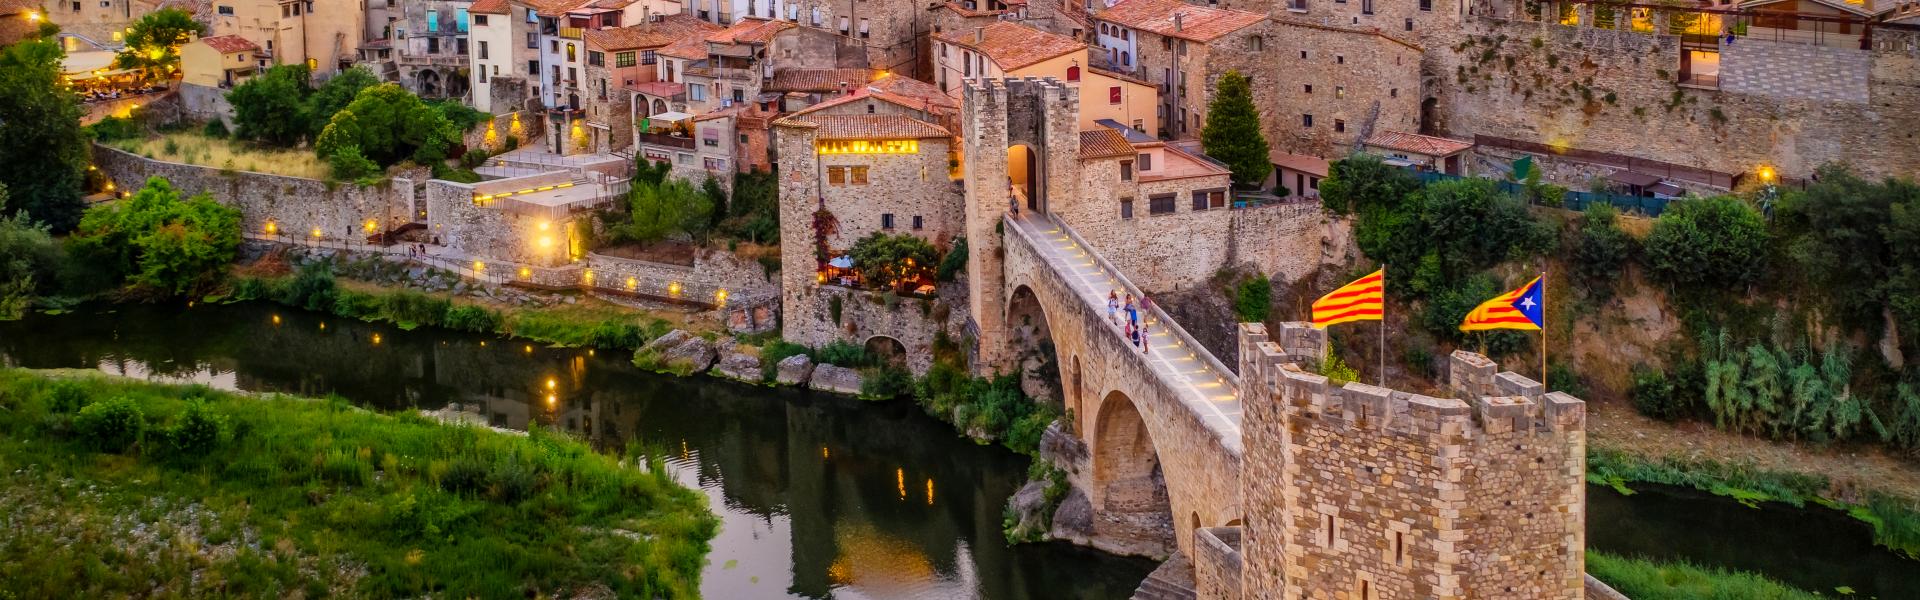 Alquileres y casas de vacaciones en la provincia de Girona - Wimdu